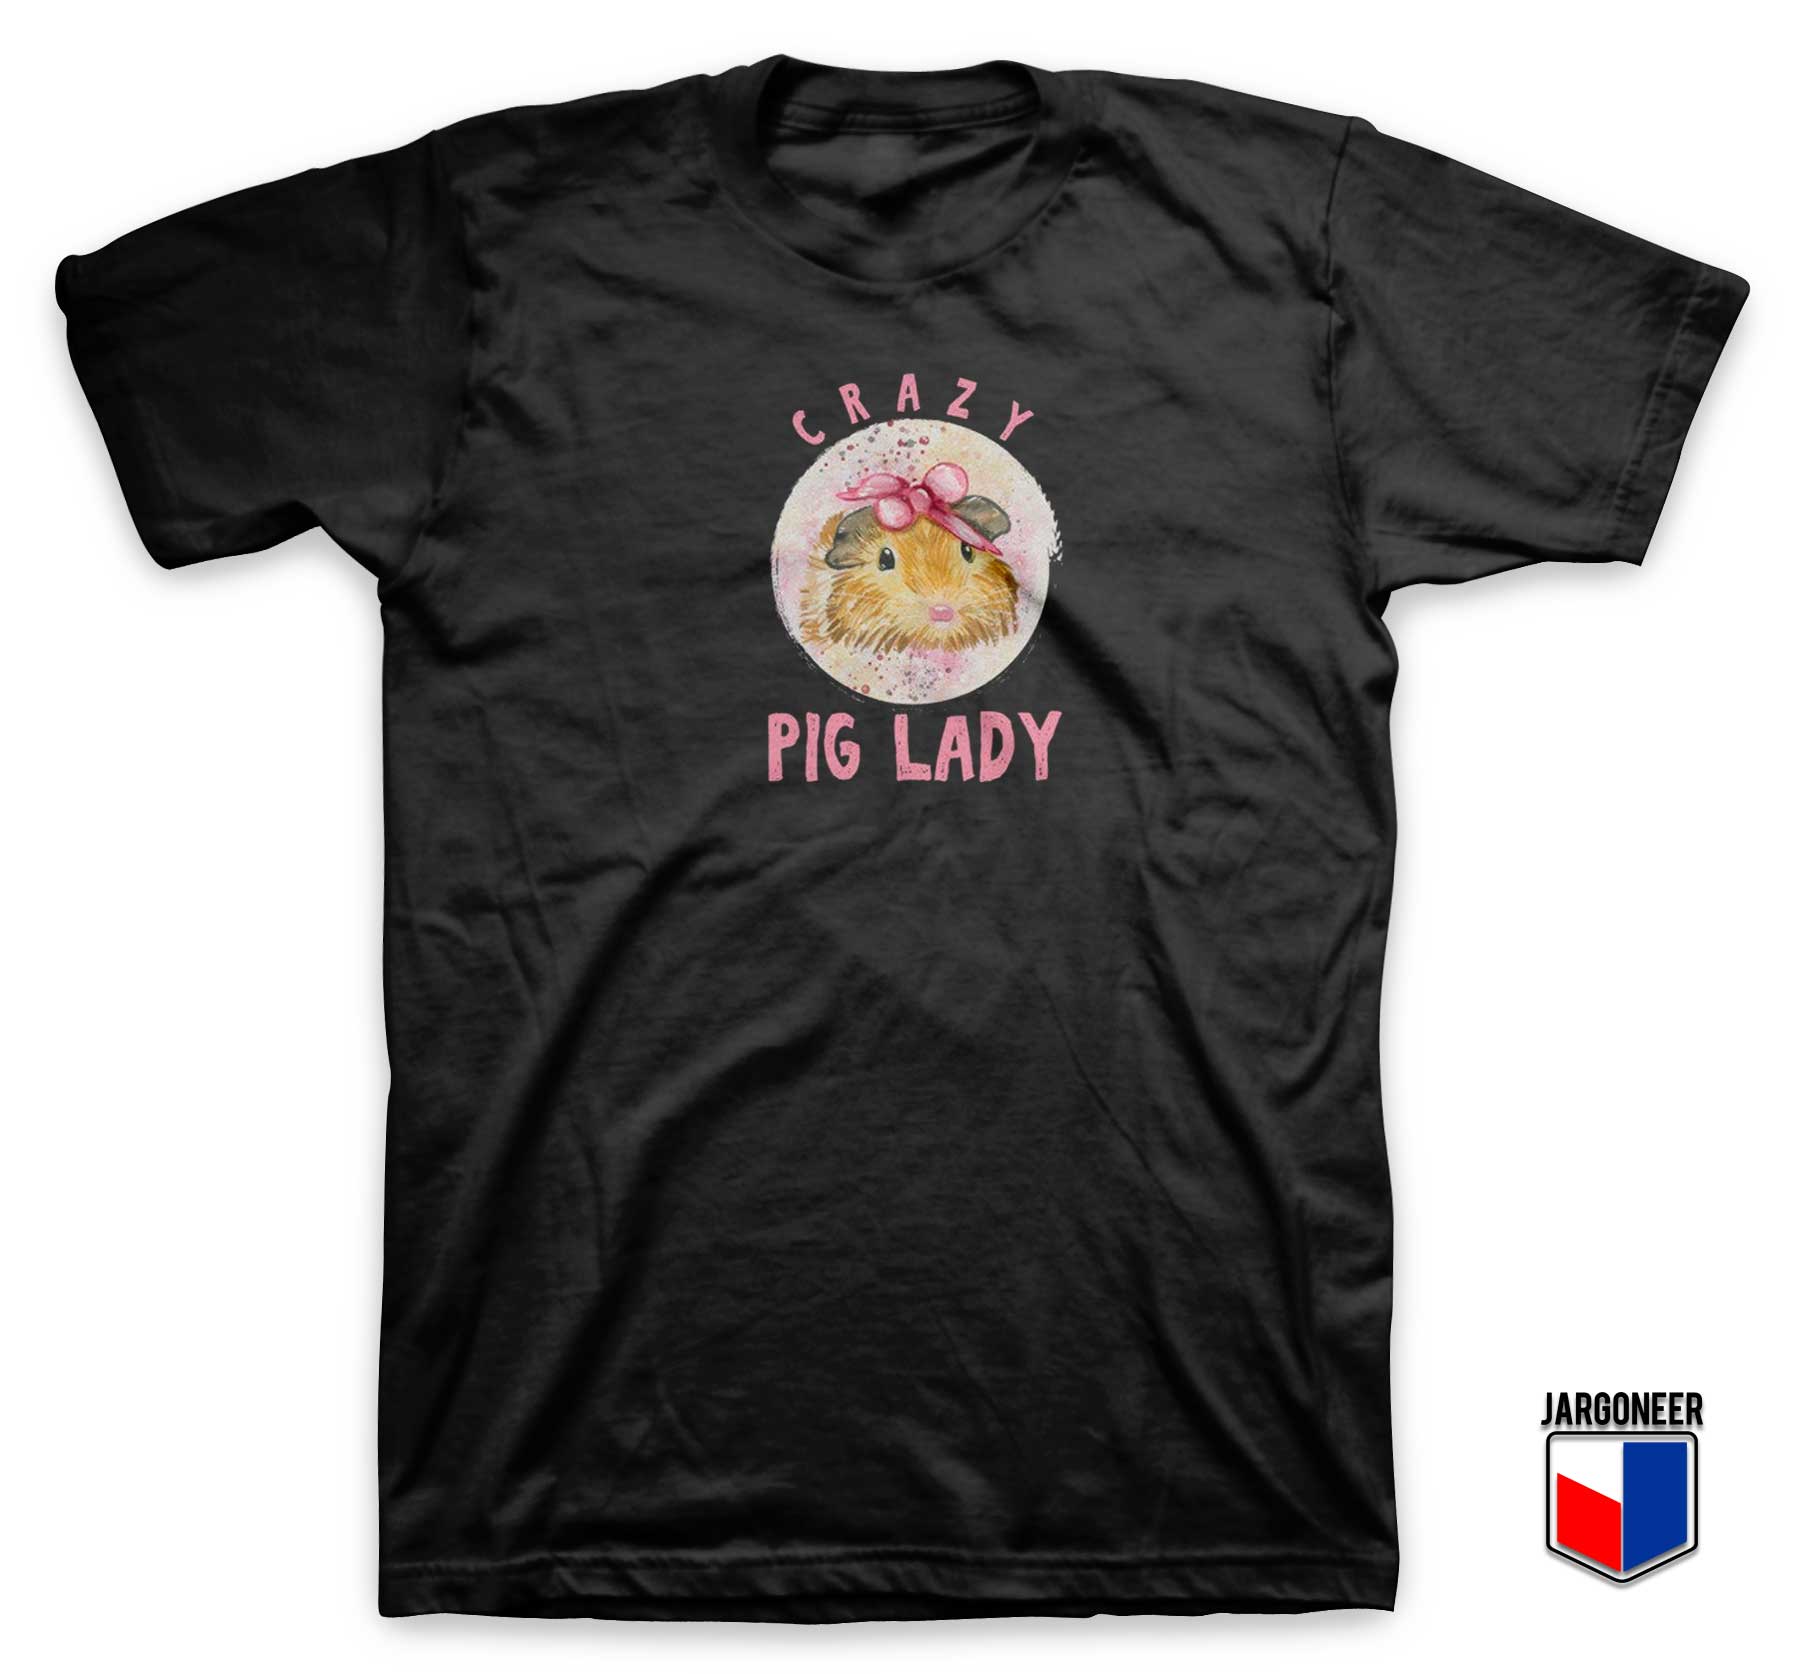 Crazy Pig Lady Cavy Guinea T Shirt - Shop Unique Graphic Cool Shirt Designs